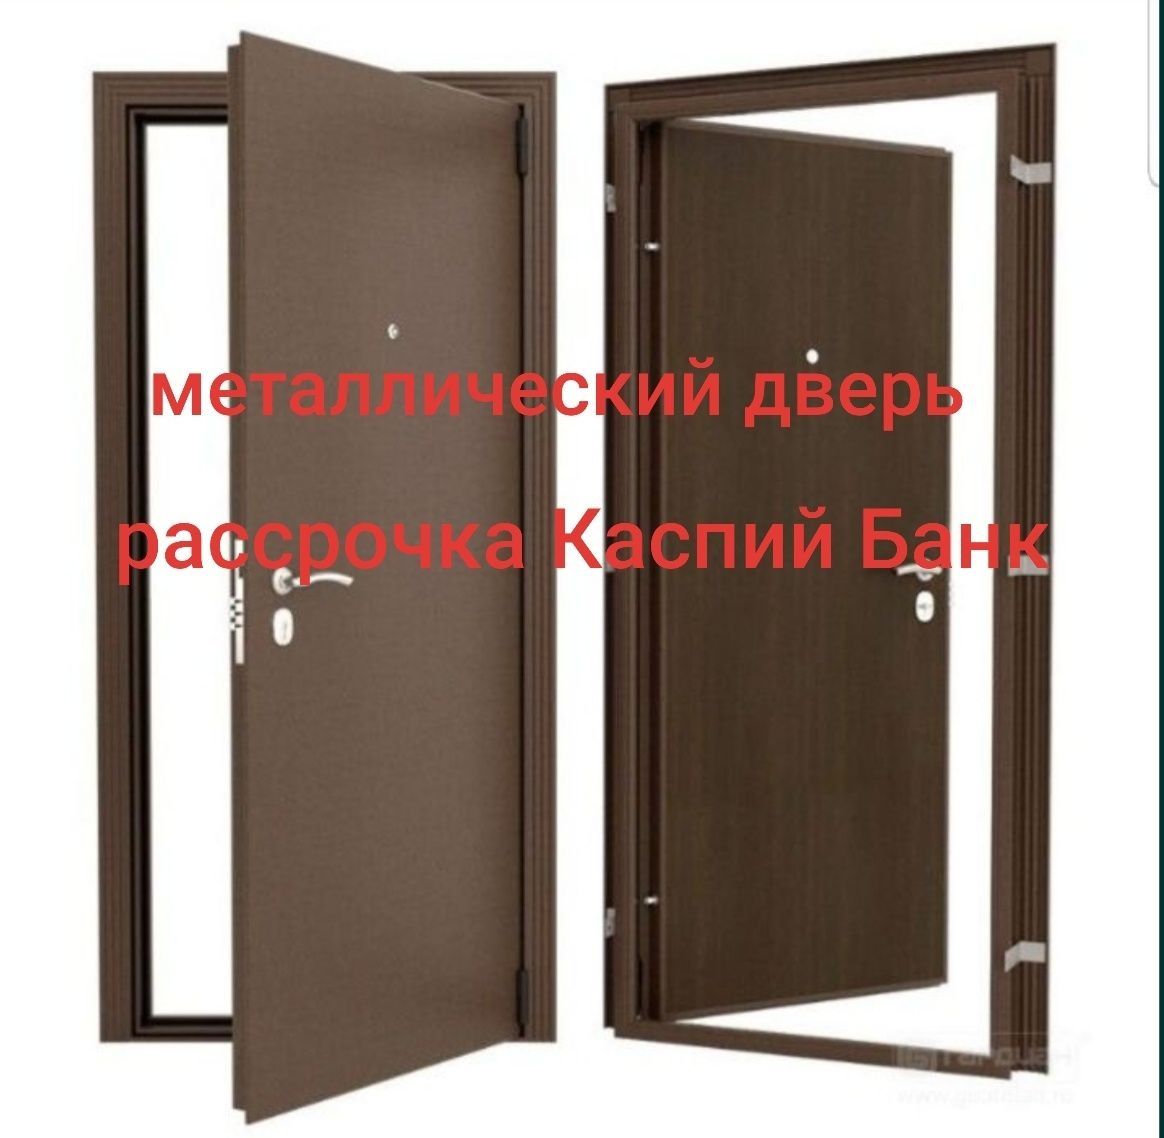 Продам двери, железный двери, металлический двери и межкомнатные двери